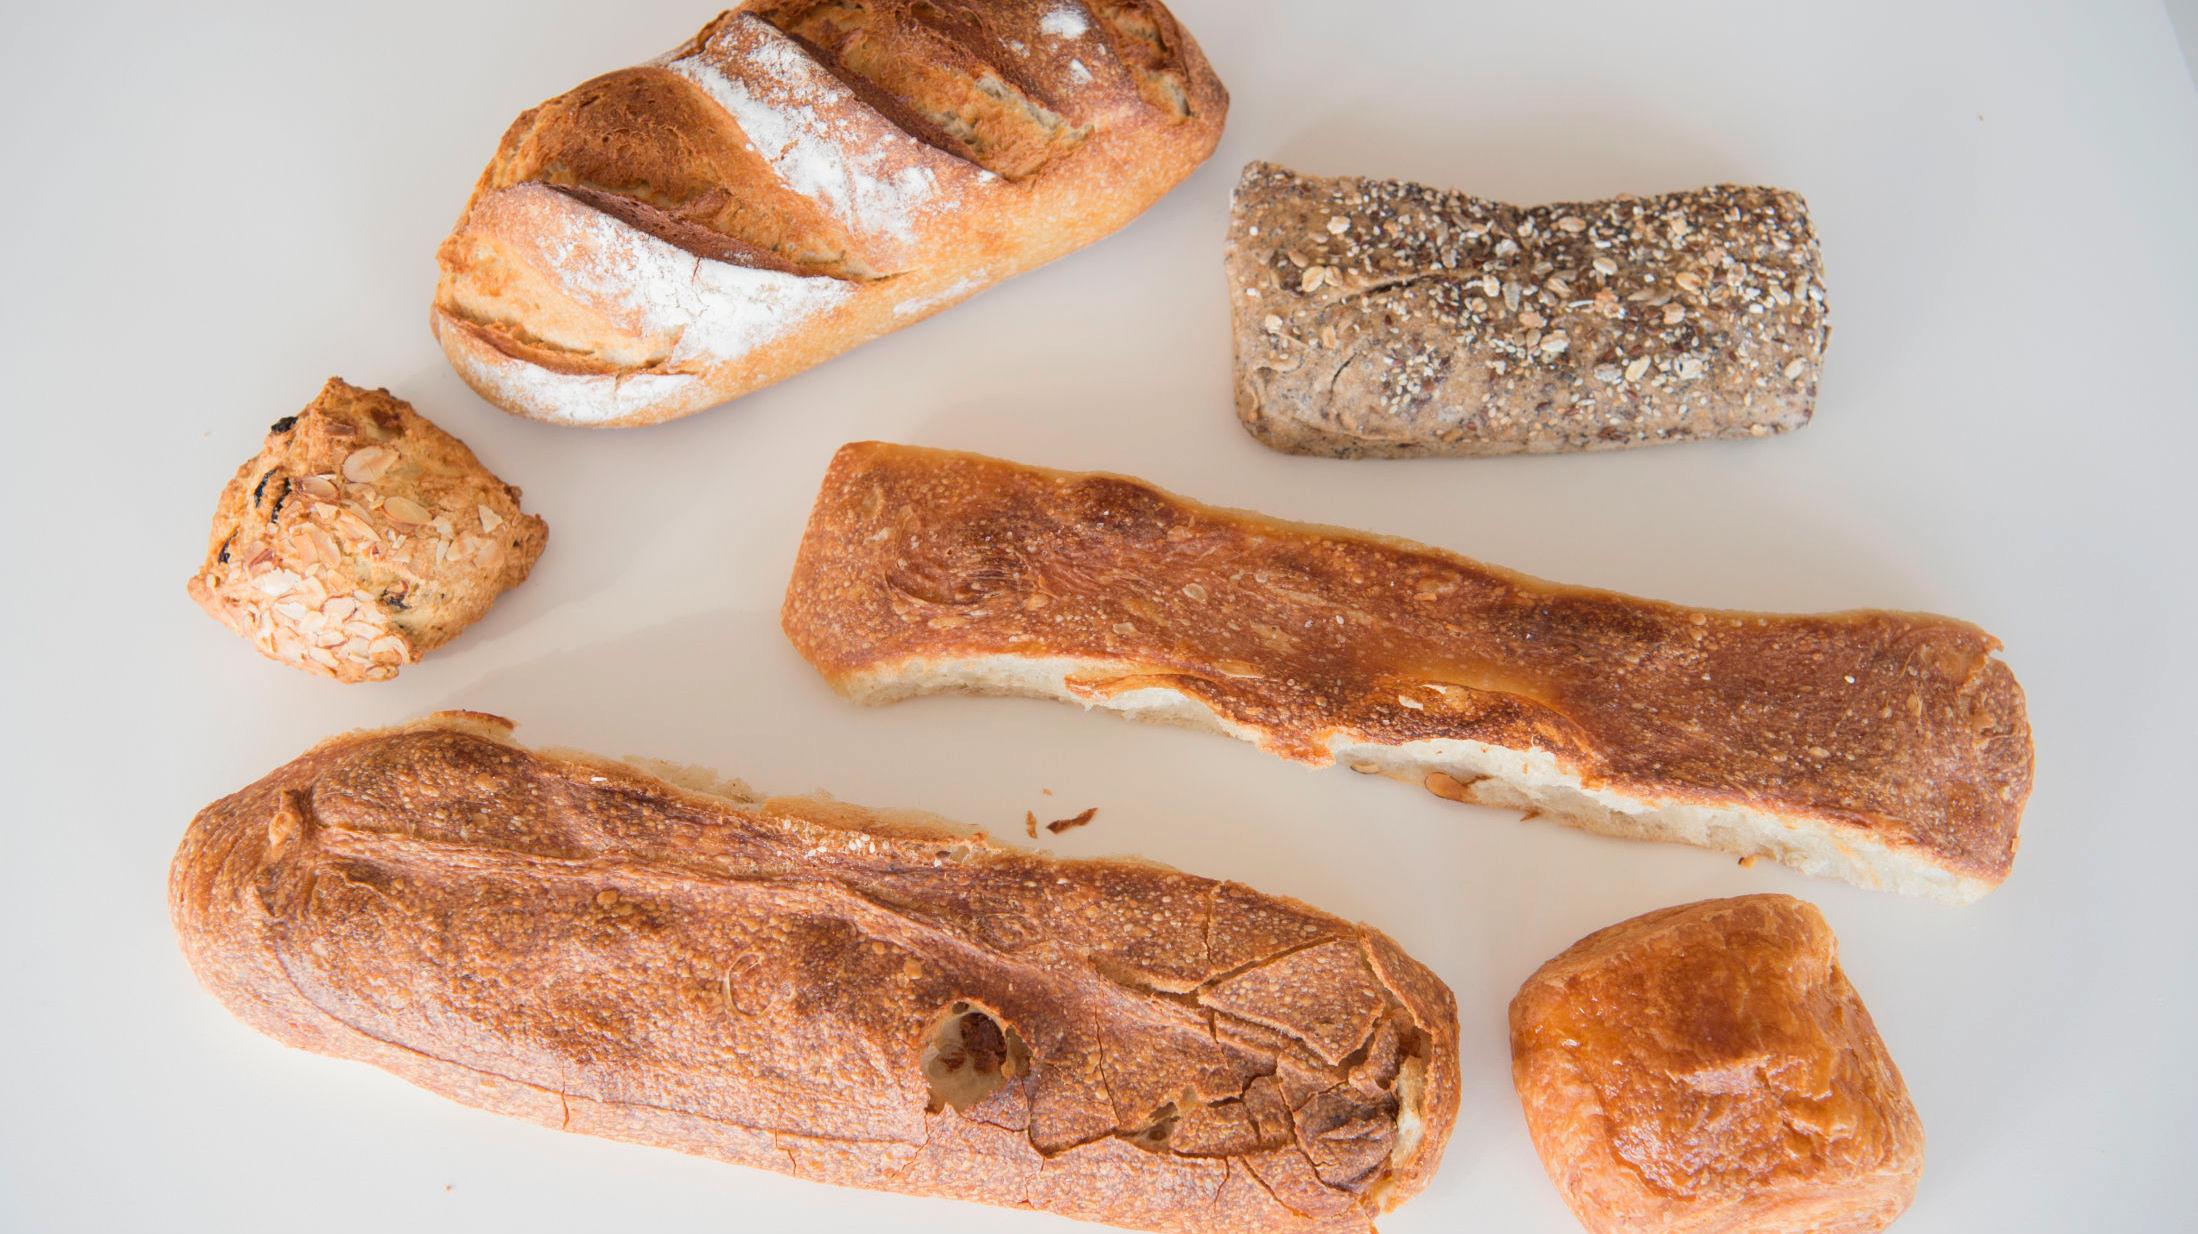 MANGE FEIL: Hele 85 prosent av brødproduktene Mattilsynet undersøkte var merket feil. Obs: Dette er et illustrasjonsbilde. Foto: Gøran Bohlin/VG